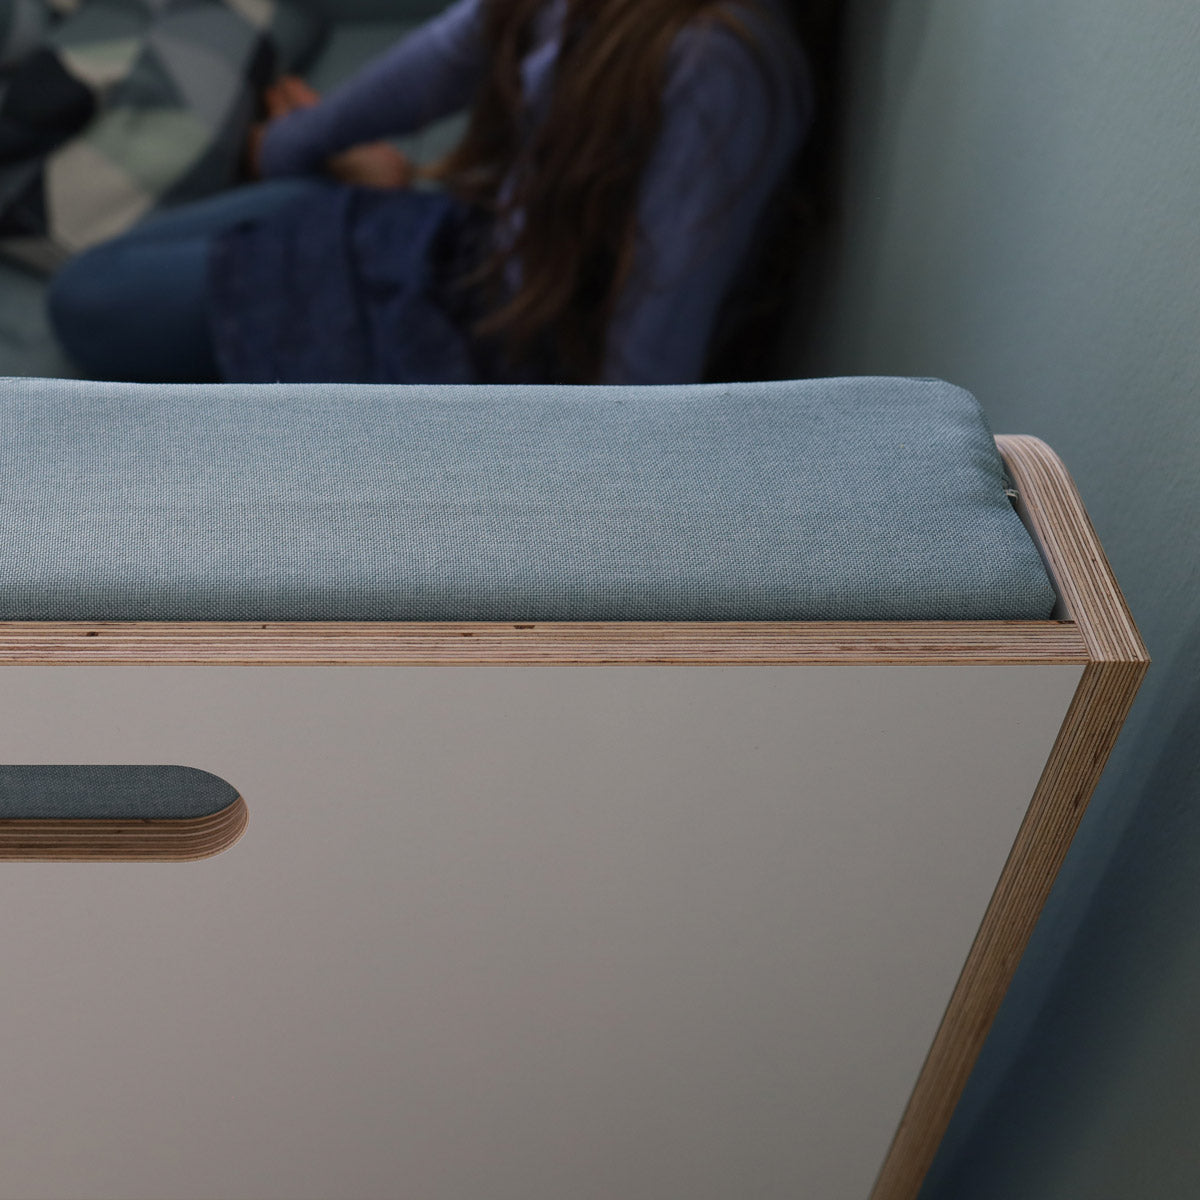 Polsterset von Nanito für Kinderbett Minimalmaxi als Sofa Detail vom Polster